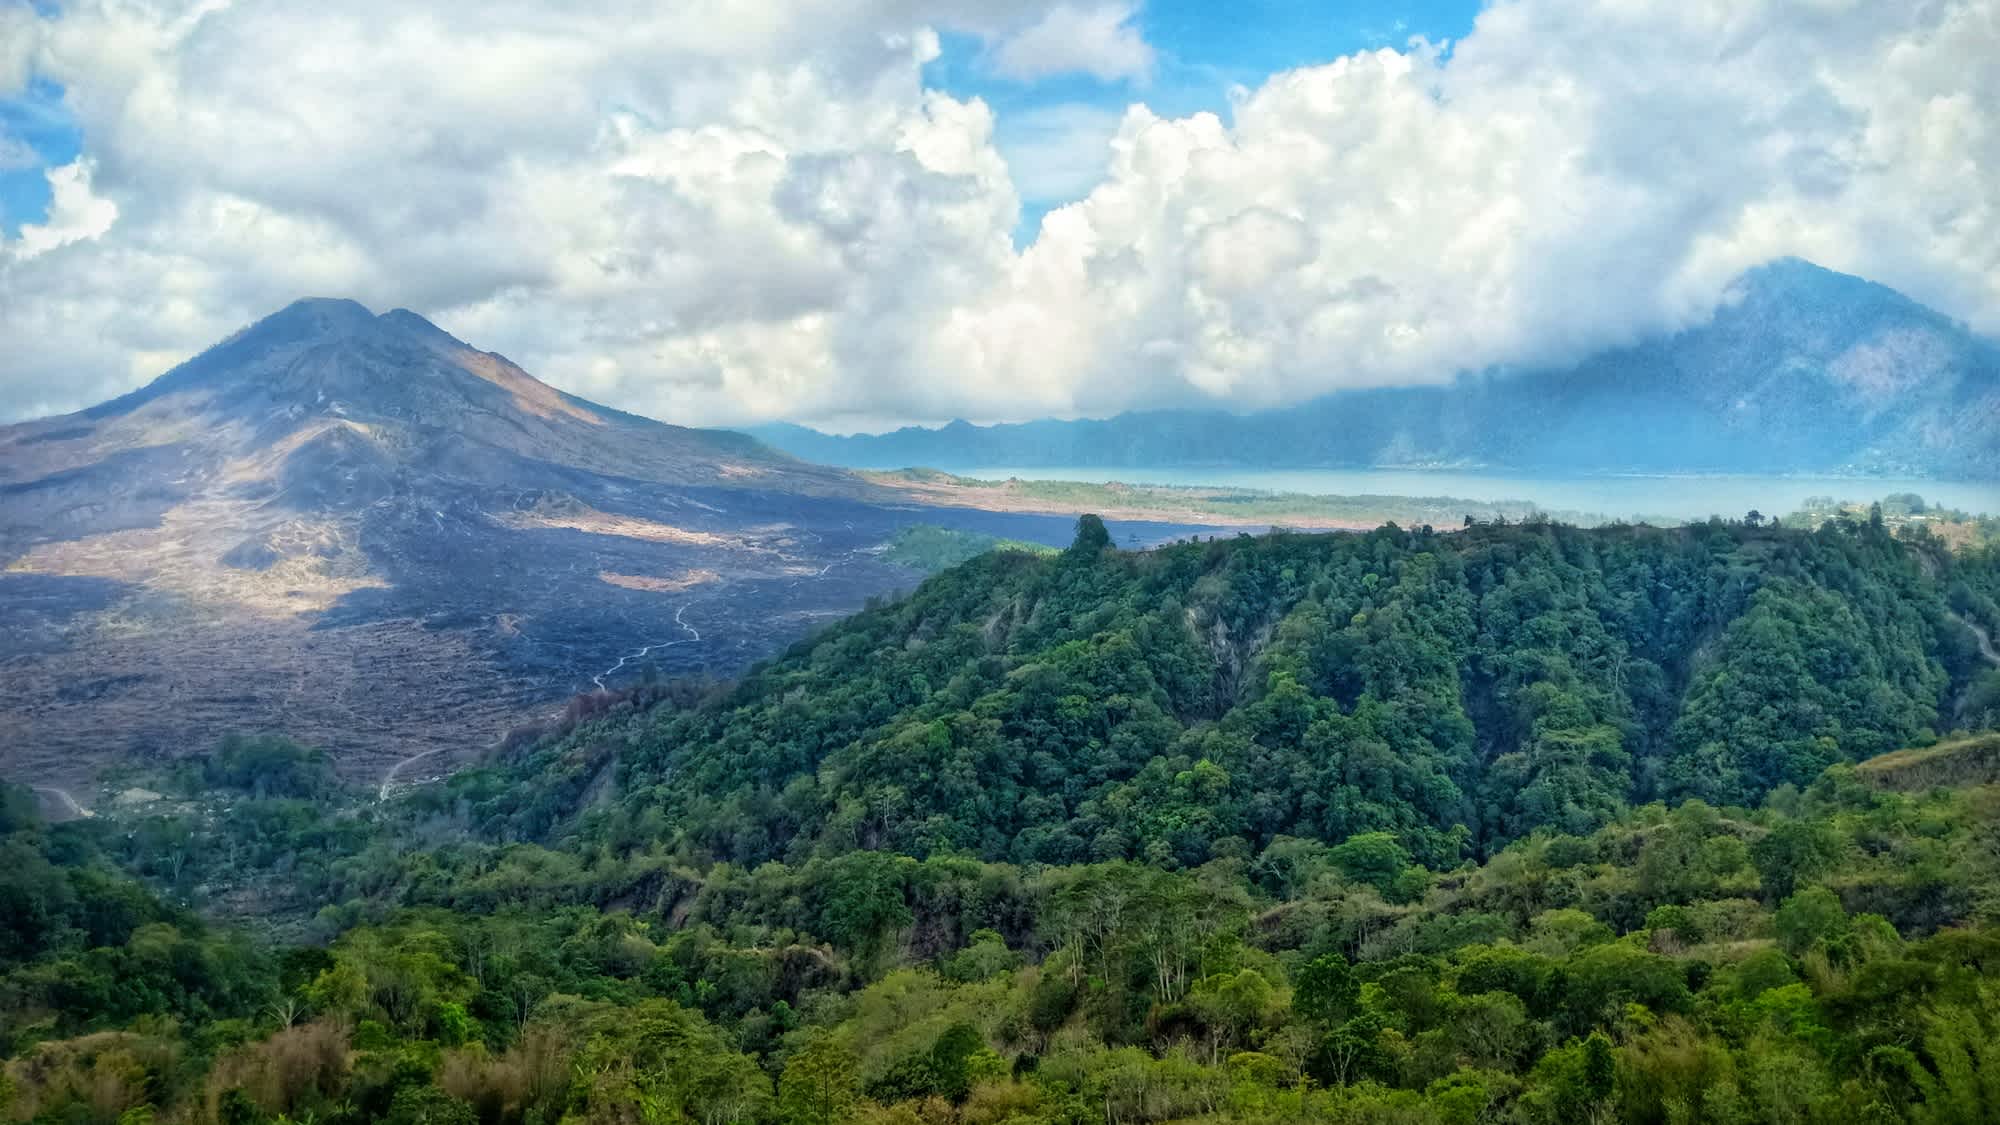 Vue sur la montagne Batur près de Kintamani, à Bali, en Indonésie

